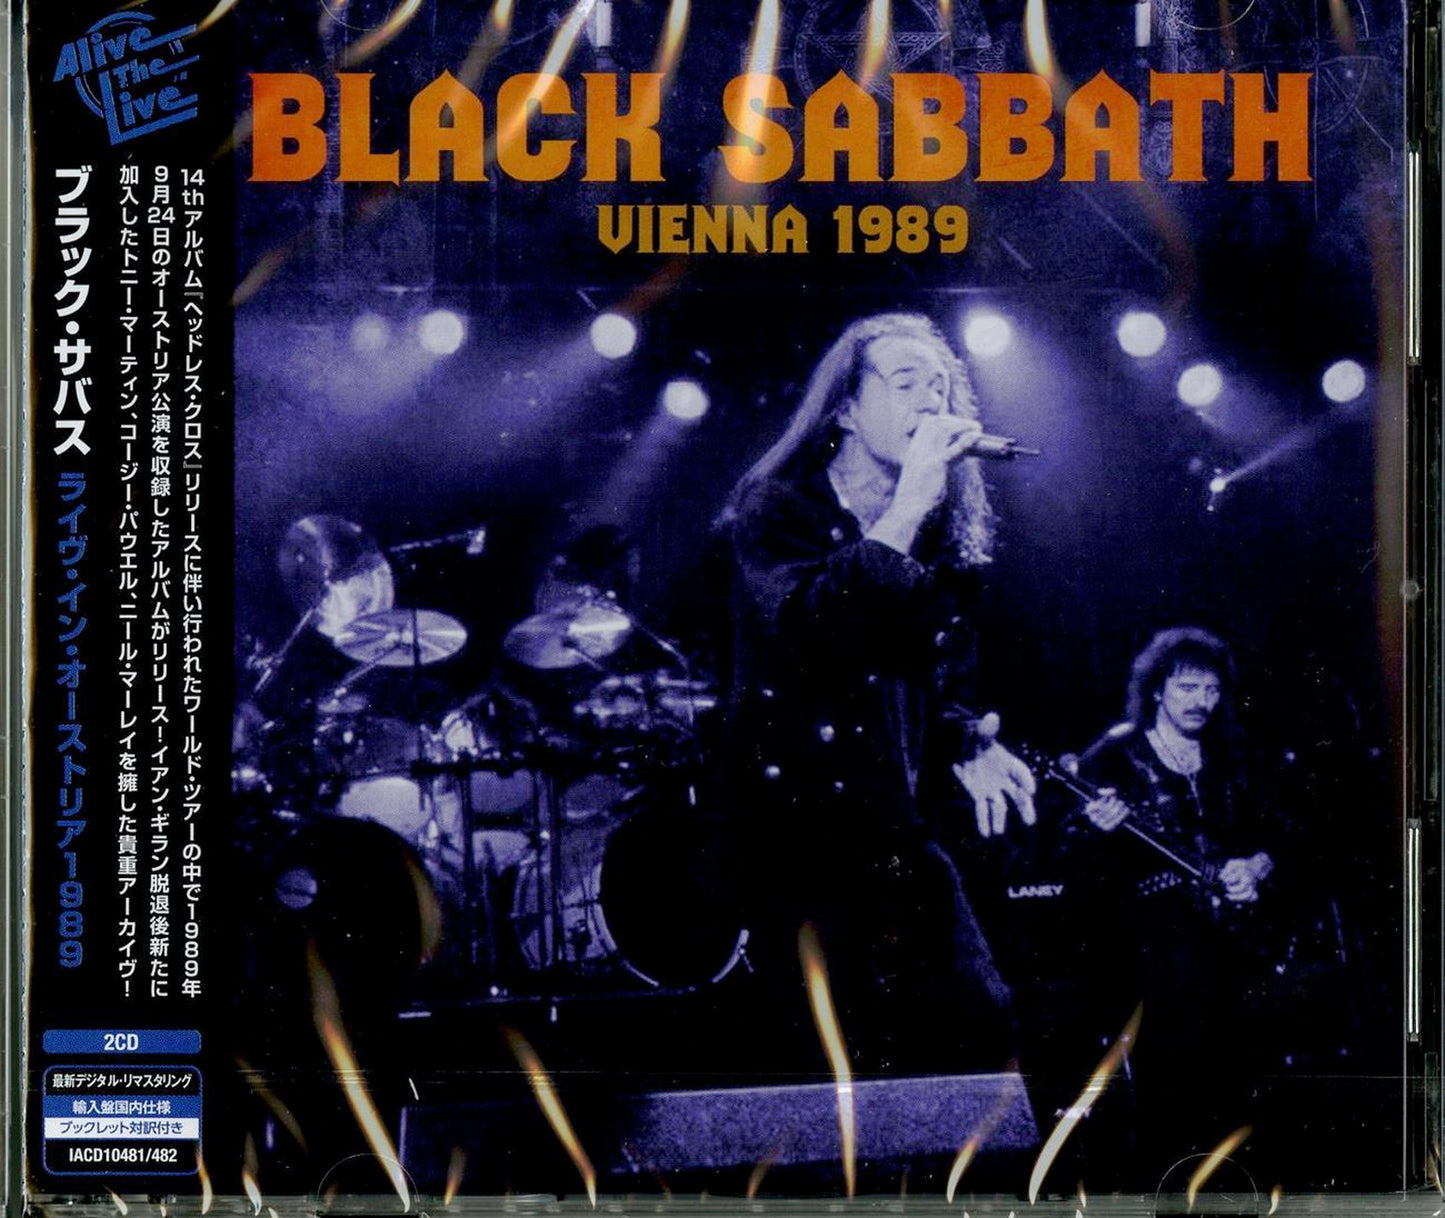 Black Sabbath - Black Sabbath 1989 - Import 2 CD